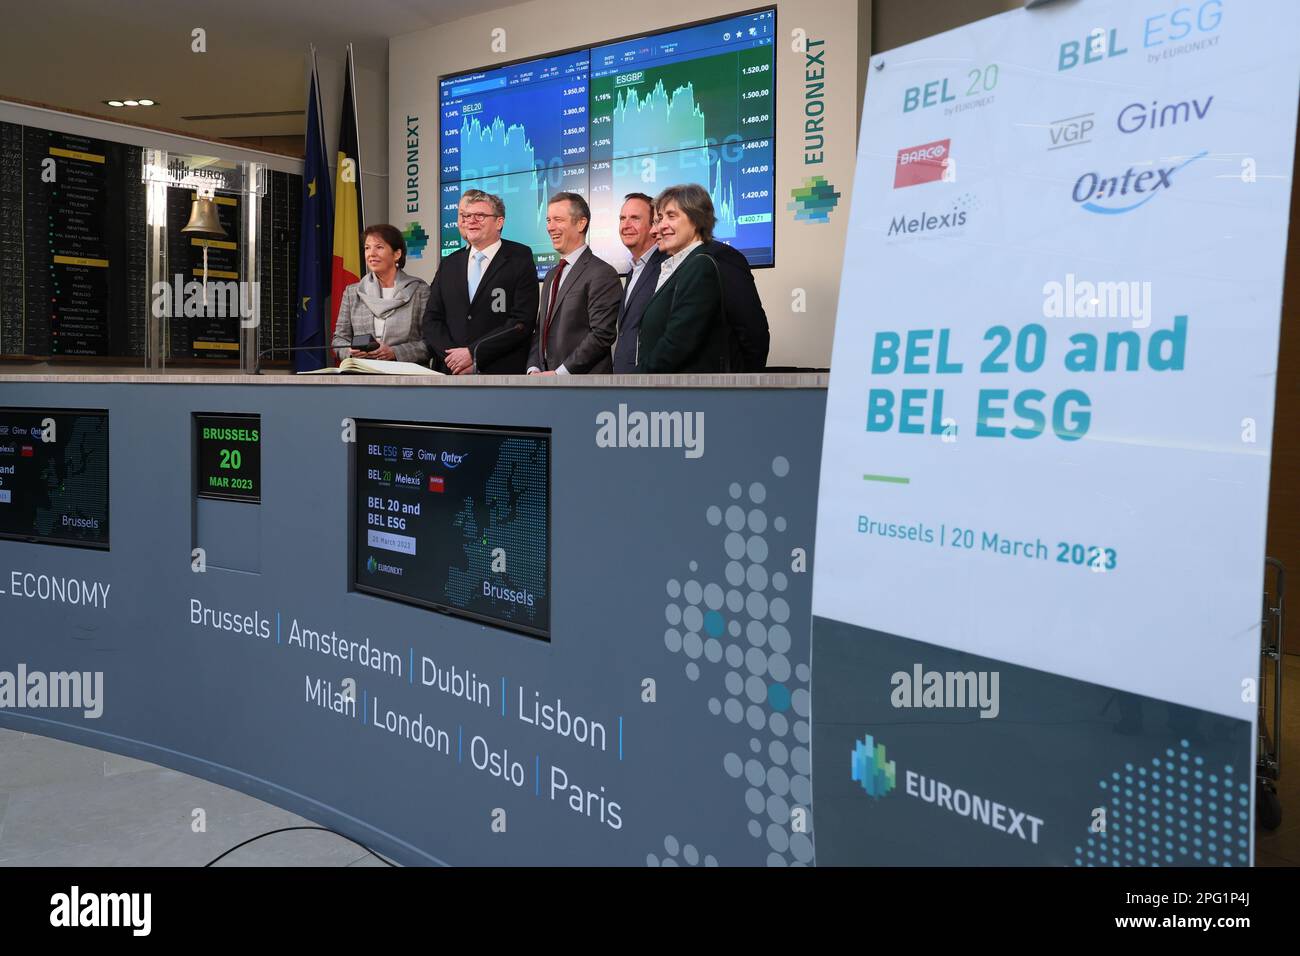 Die Glockenzeremonie der Euronext-Börse in Brüssel, bei der Melexis und Barco am Montag, den 20. März 2023, in den Bel20-Index aufgenommen werden. BELGA FOTO BENOIT DOPPPAGNE Stockfoto